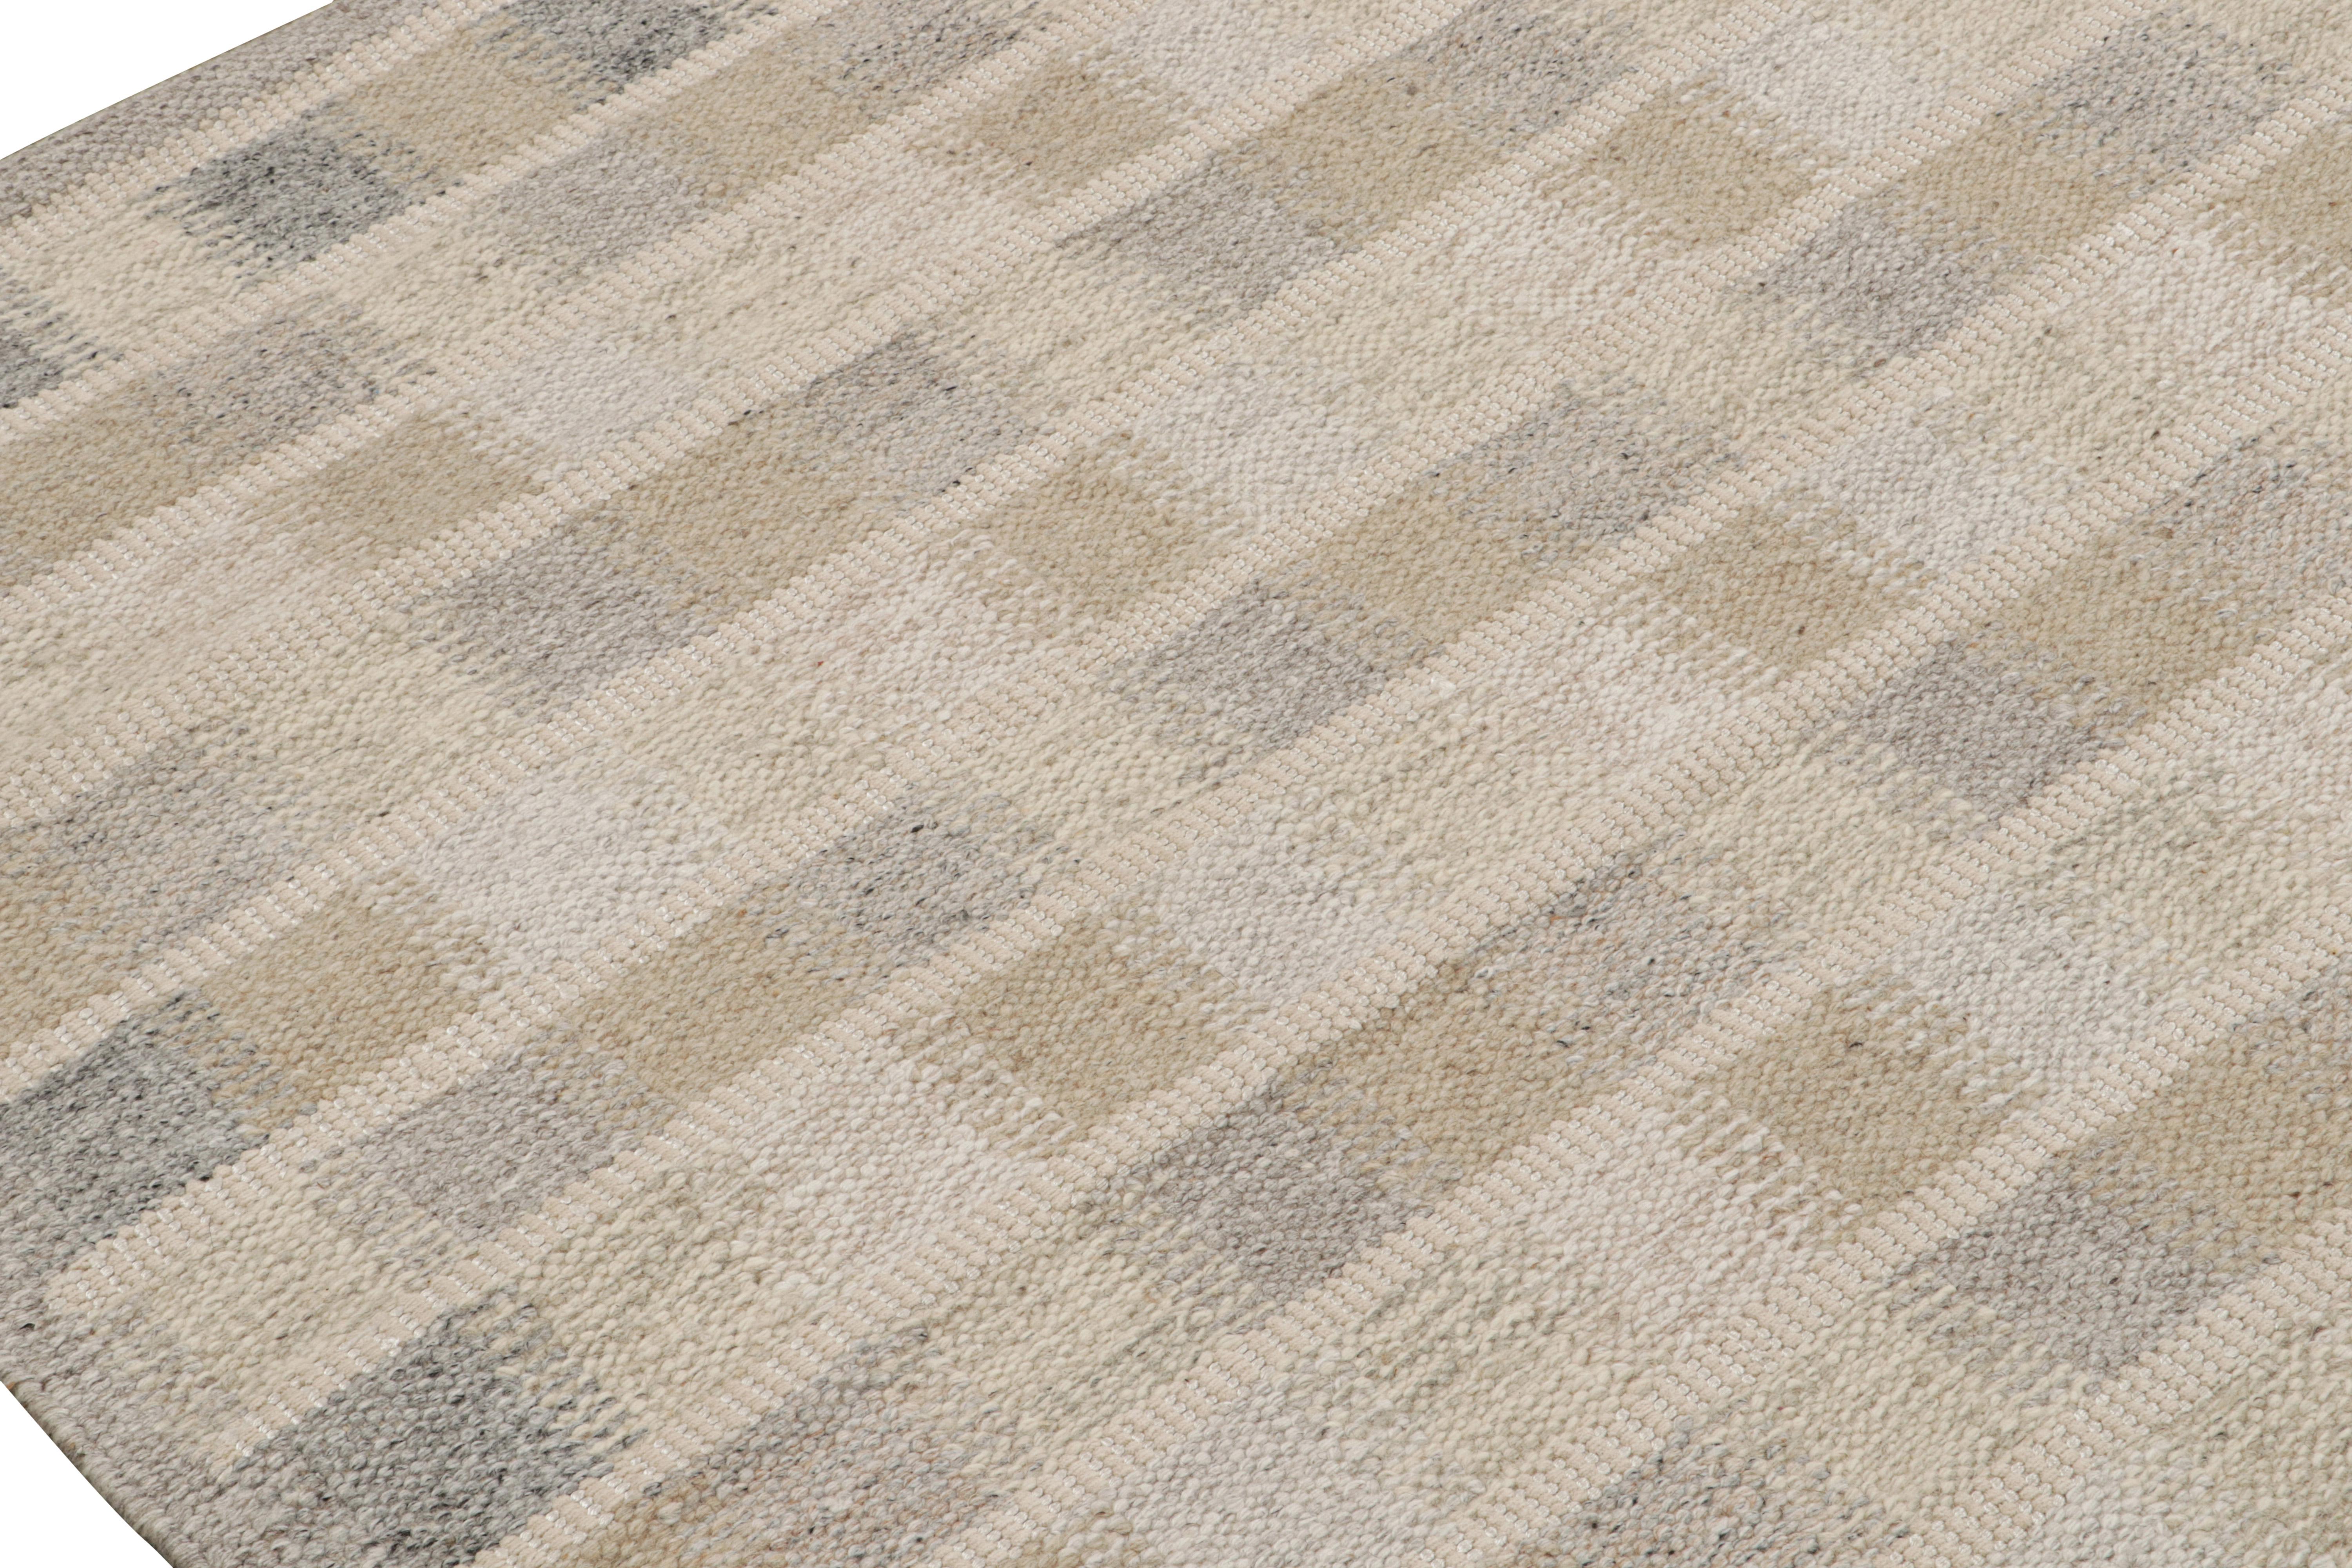 Rug & Kilim's Teppich im skandinavischen Stil mit beige-braunen, geometrischen Mustern (Handgewebt) im Angebot